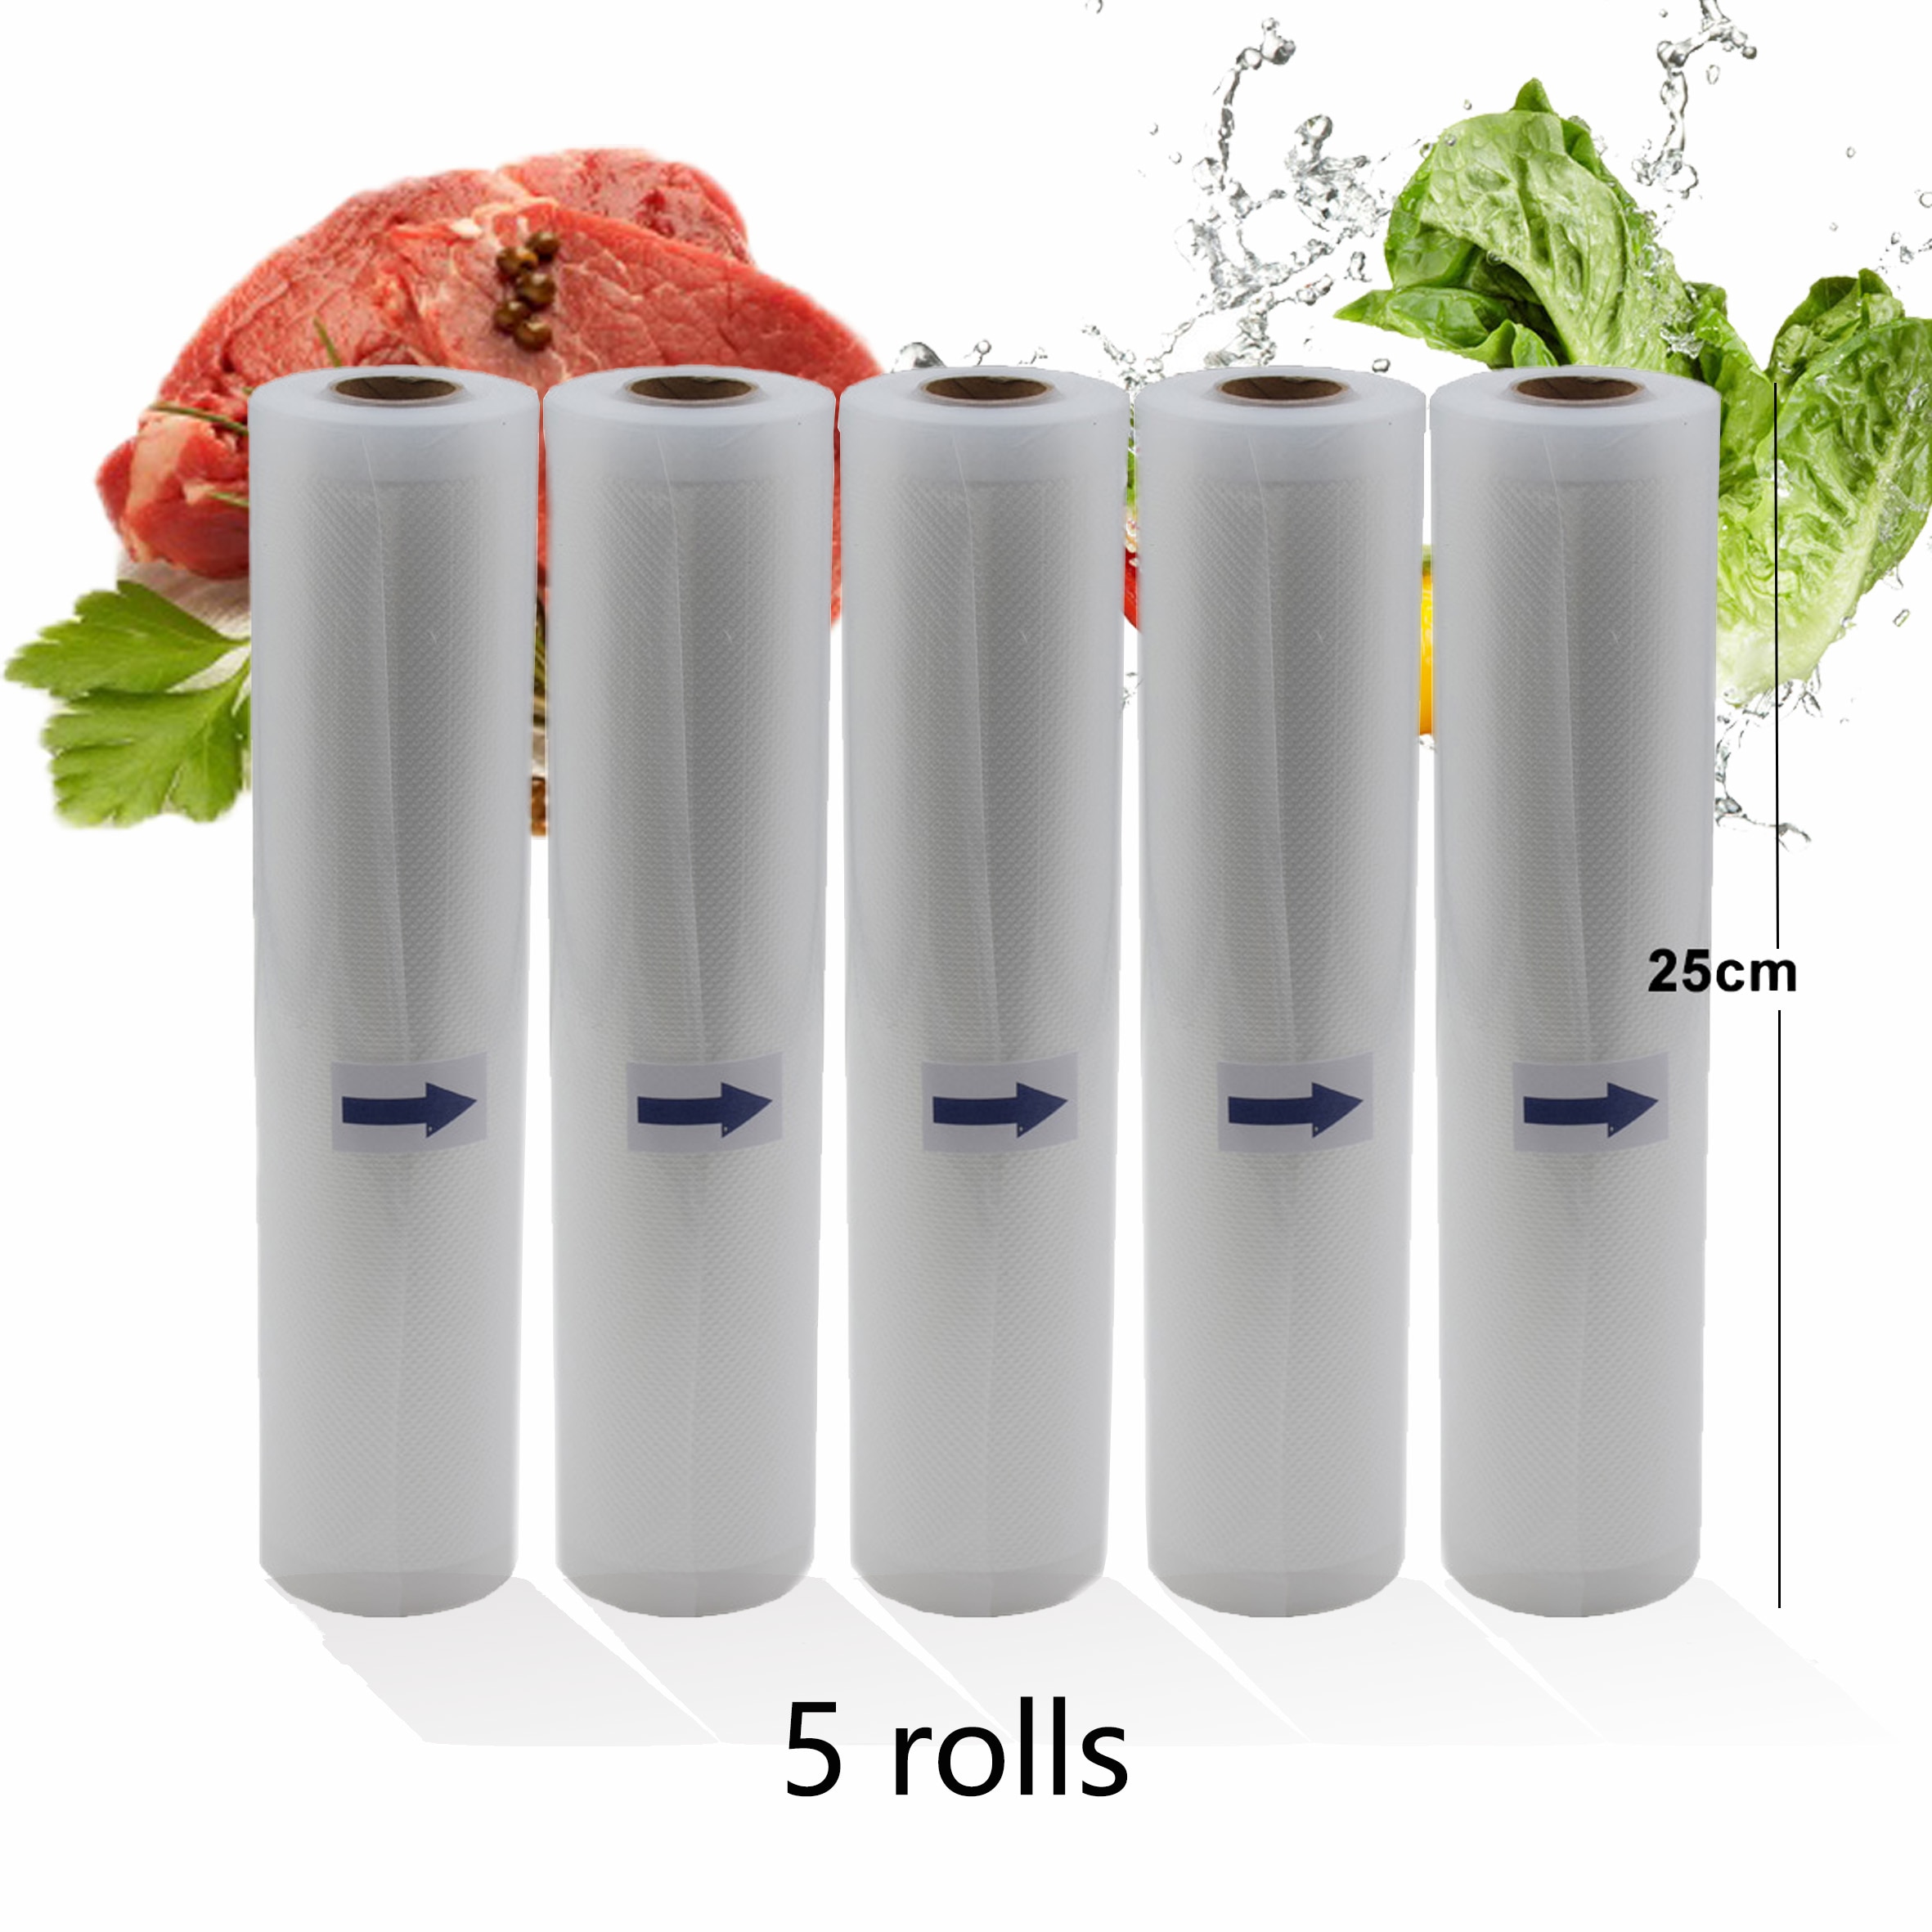 5 Rolls/Lot Huishoudelijke Keuken Voedsel Vacuüm Zak Voor Vacuumsealer Opslag Zakken voor Voedsel Verse Houden 25cm * 500cm